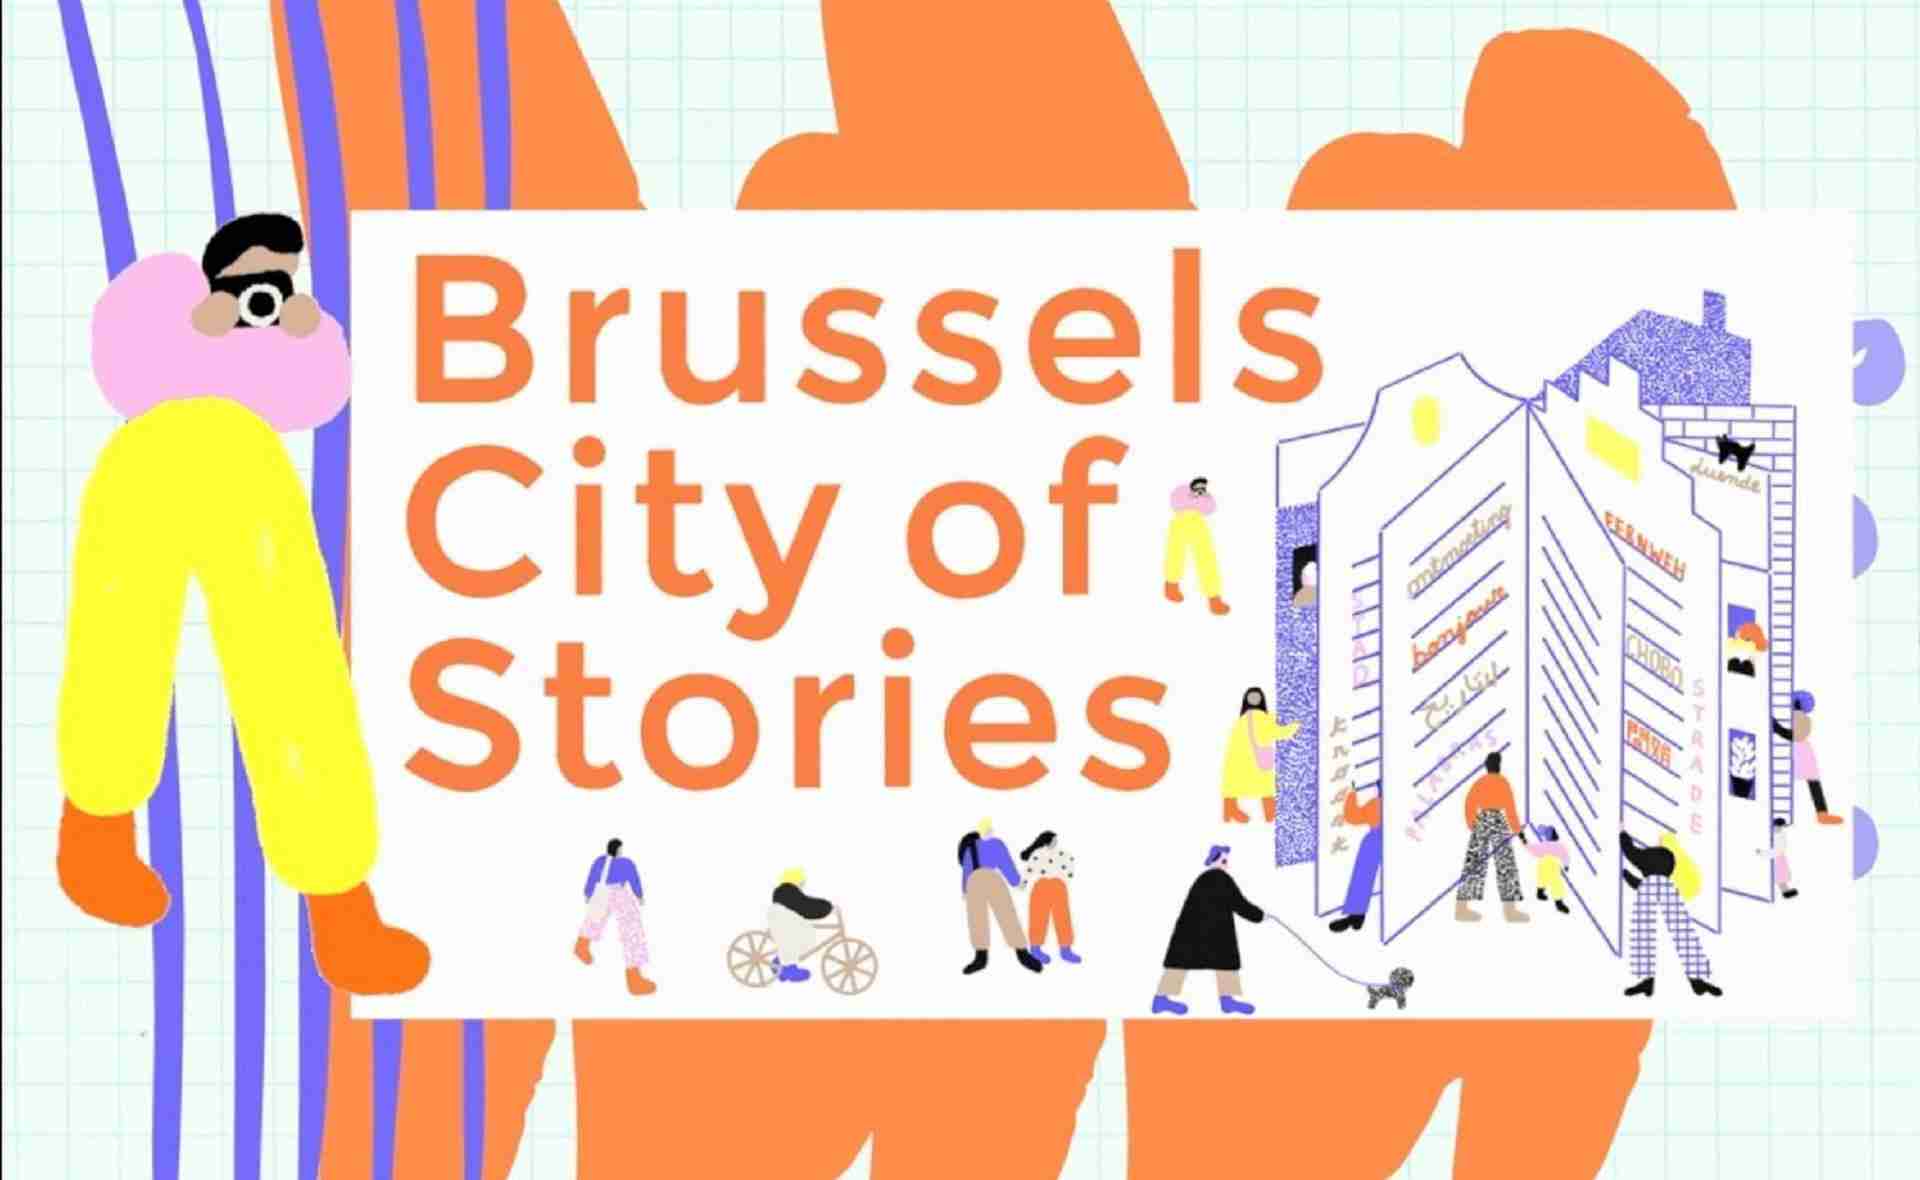 Brüsszel a történetek városa - Történetfesztivál a brüsszeliek tömegközlekedési eszközökön történt találkozásaiból